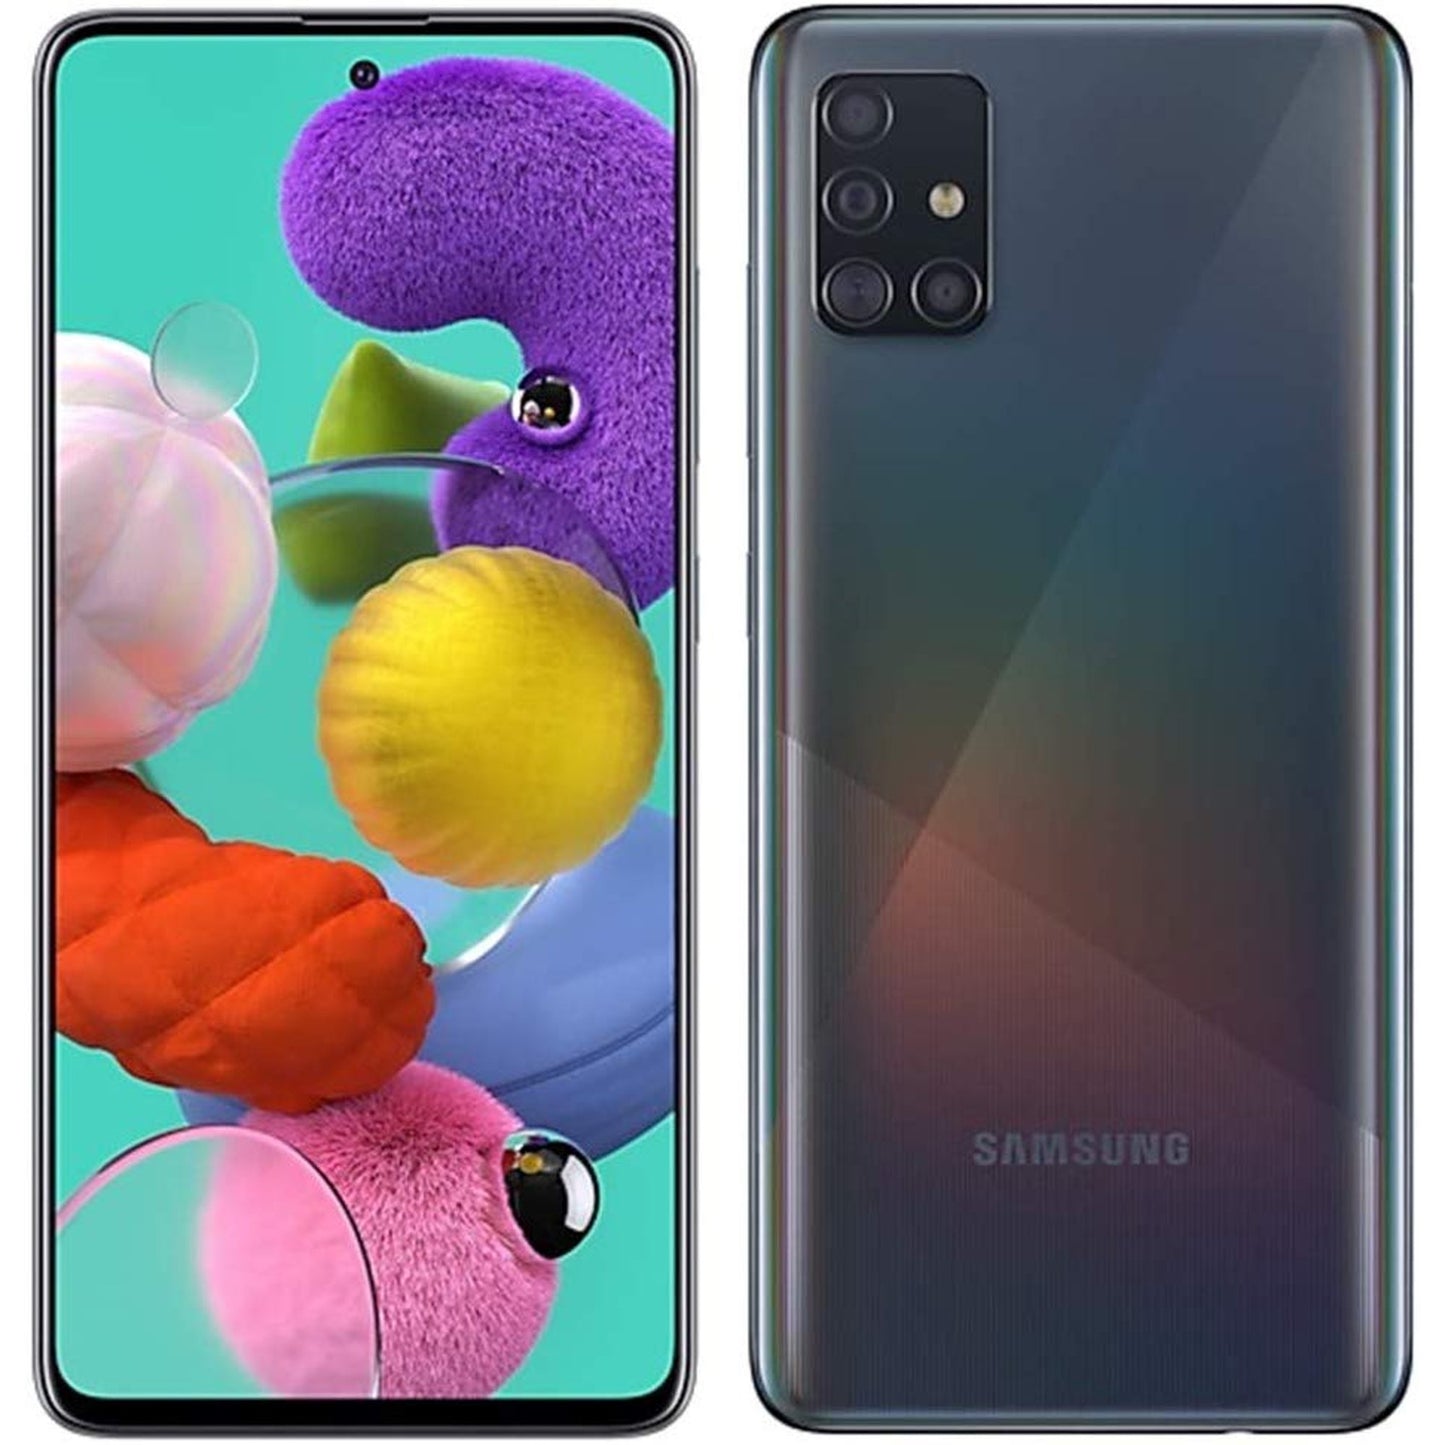 Samsung Galaxy A51 - 64GB UNLOCKED